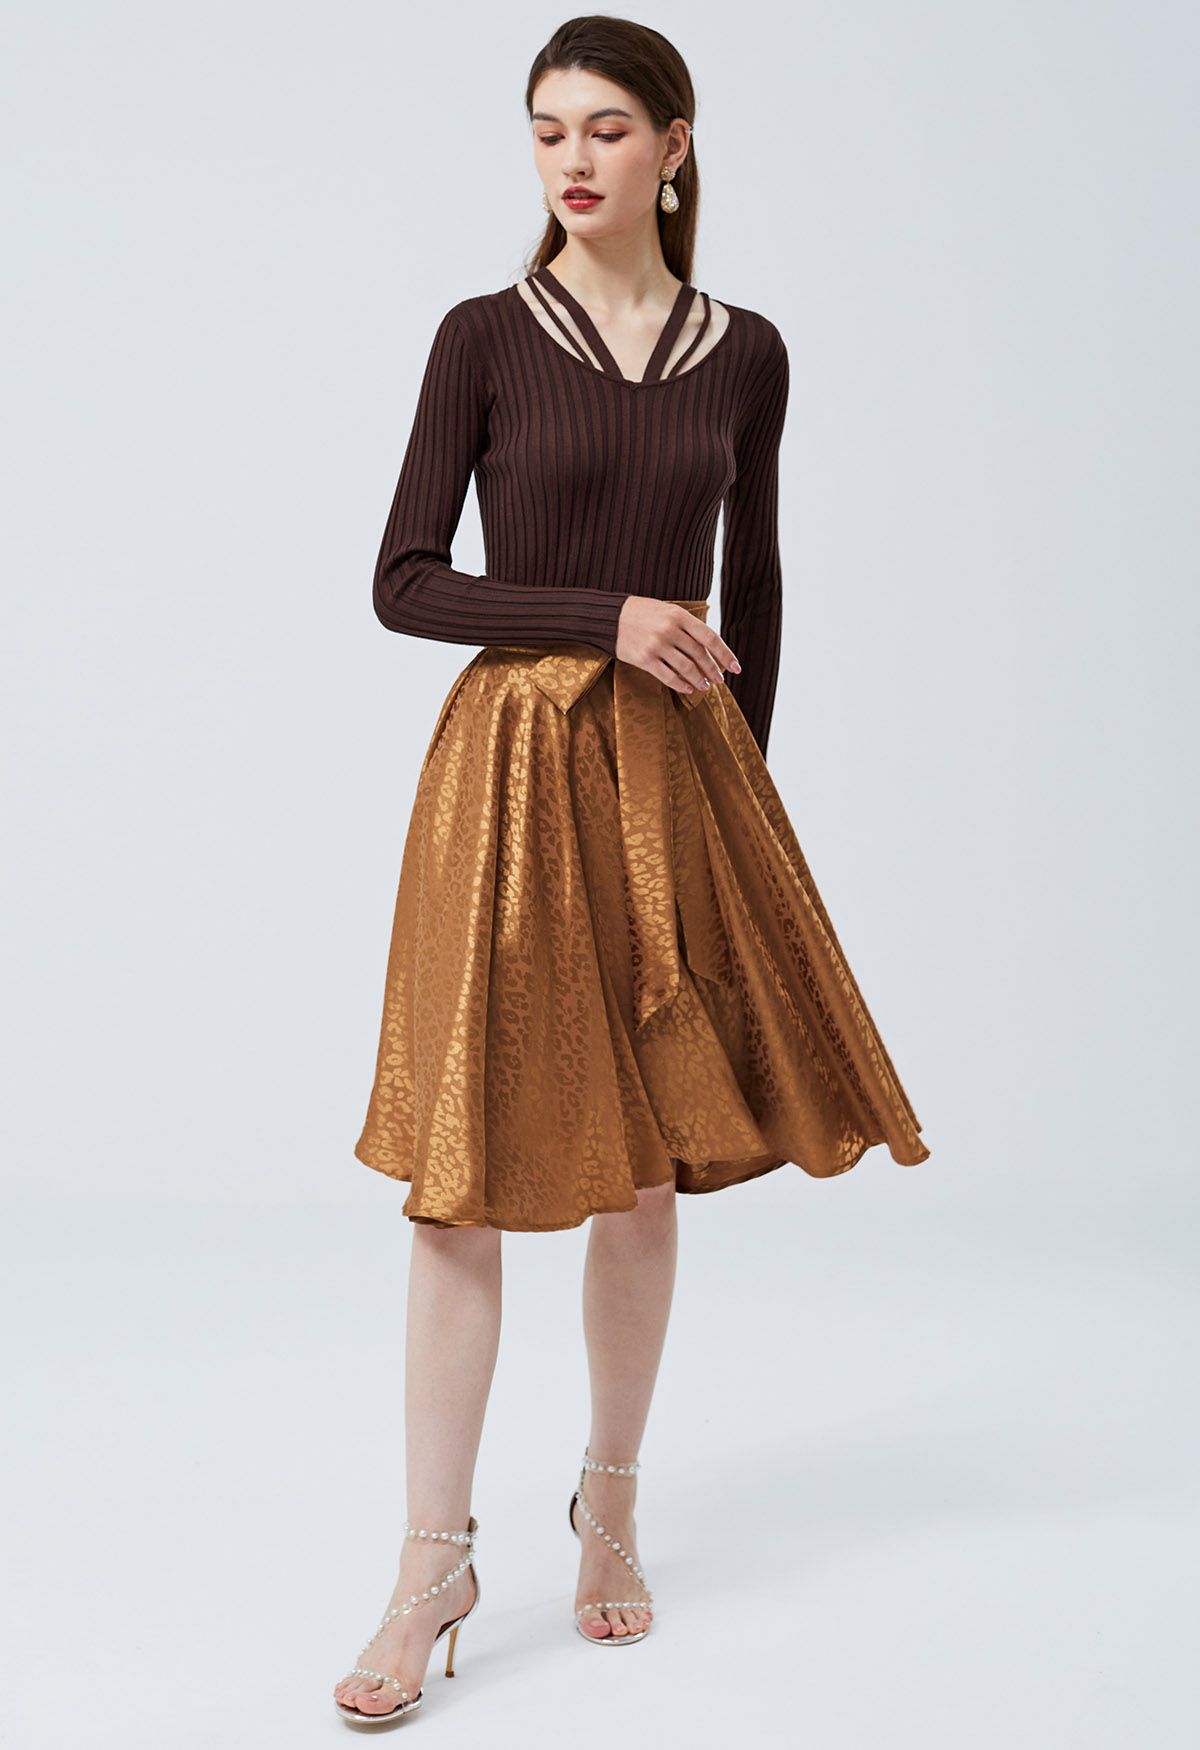 Glossy Leopard Jacquard Tie Waist Flare Midi Skirt in Pumpkin